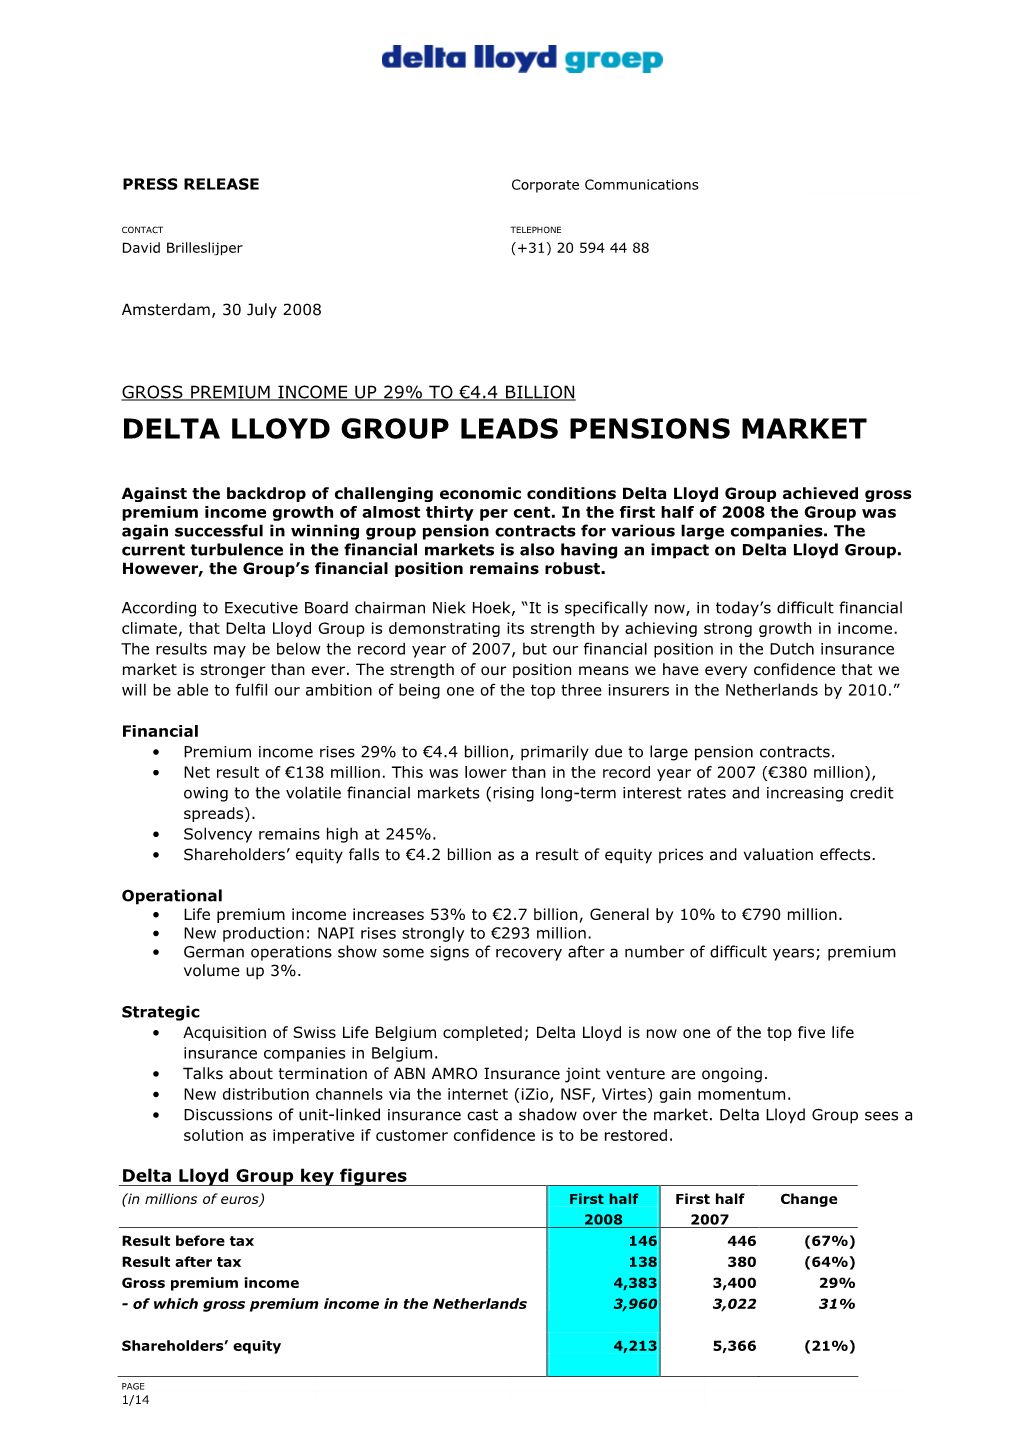 Delta Lloyd Groep H1 2008